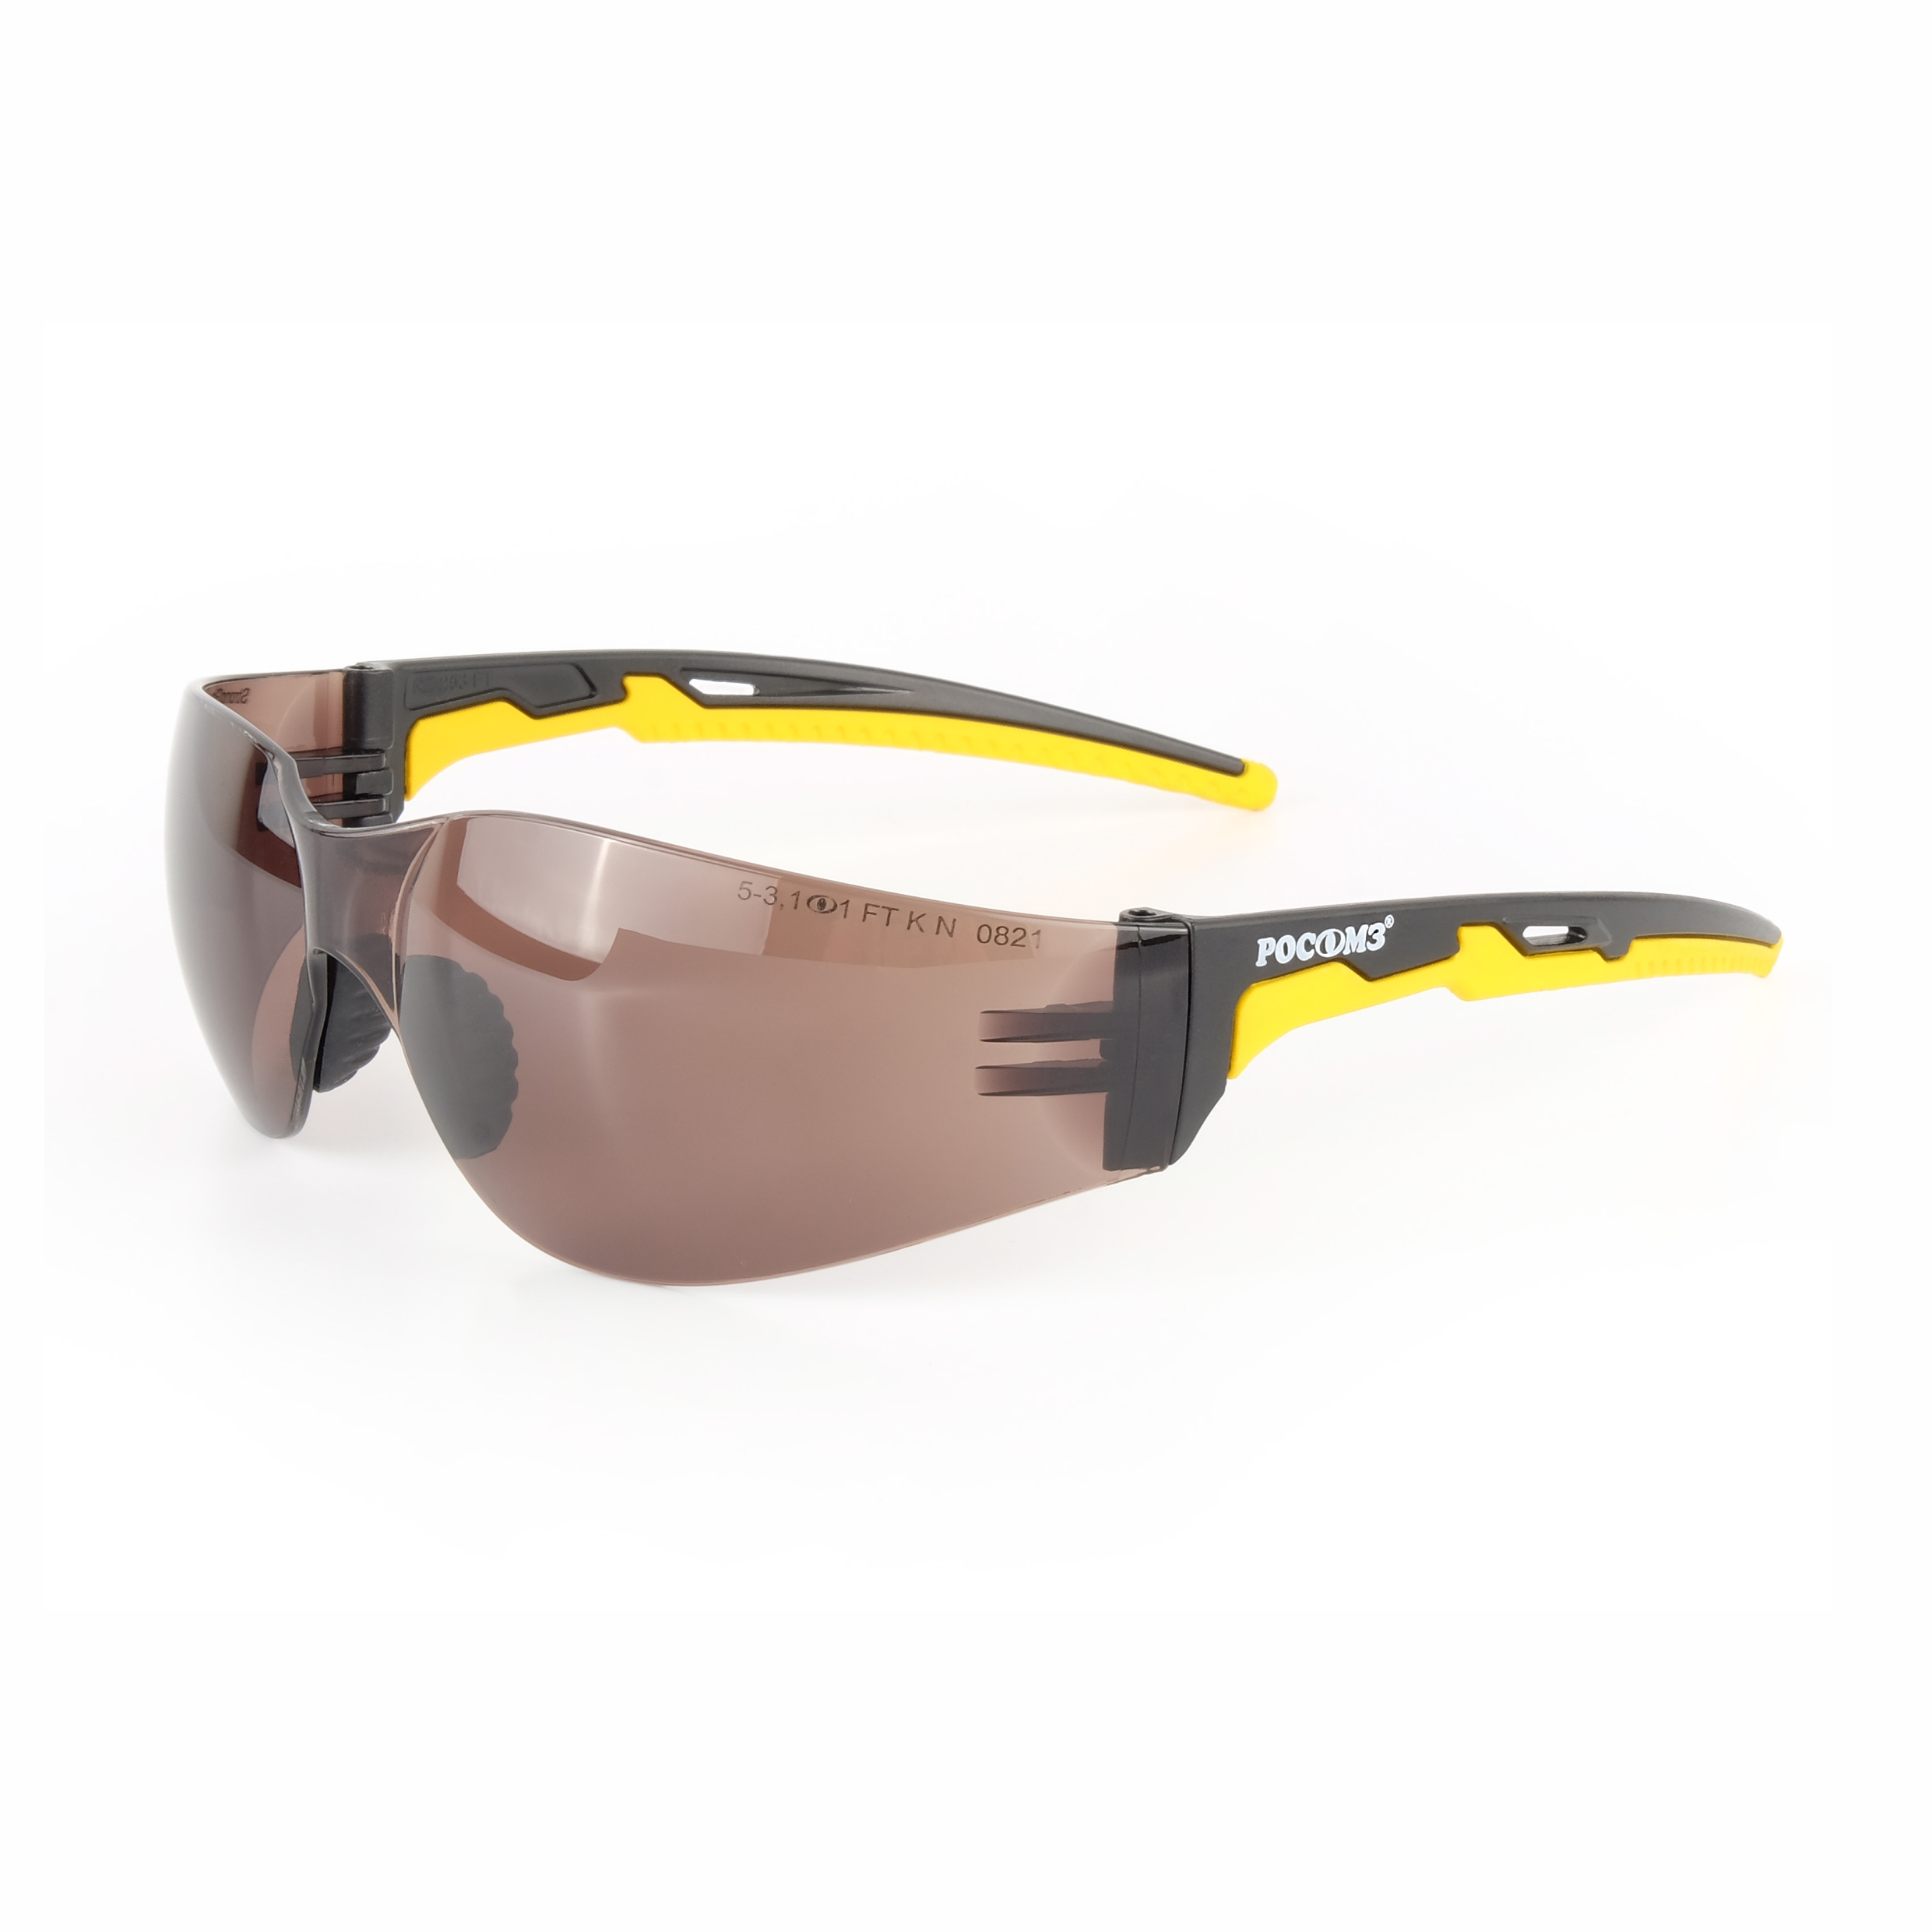 О15 HAMMER ACTIVE Strong Glass ( 5-3,1 PC ) очки защитные открытые с мягким носоупором